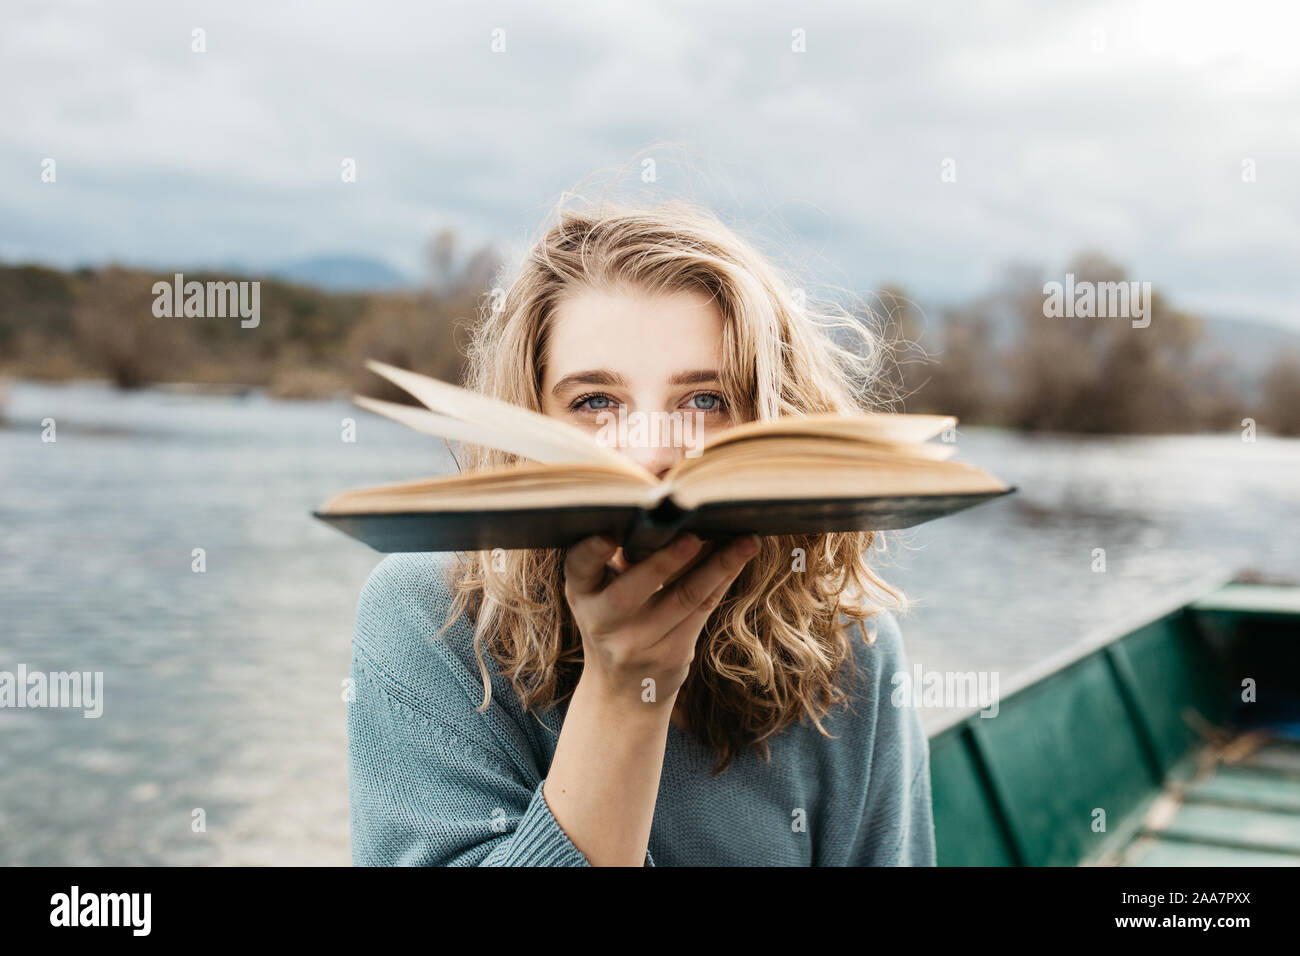 Retrato de una joven hermosa mujer sentada en un barco y leyendo un libro. Ella es una lombriz y ella elige entre pocos libros. Foto de stock